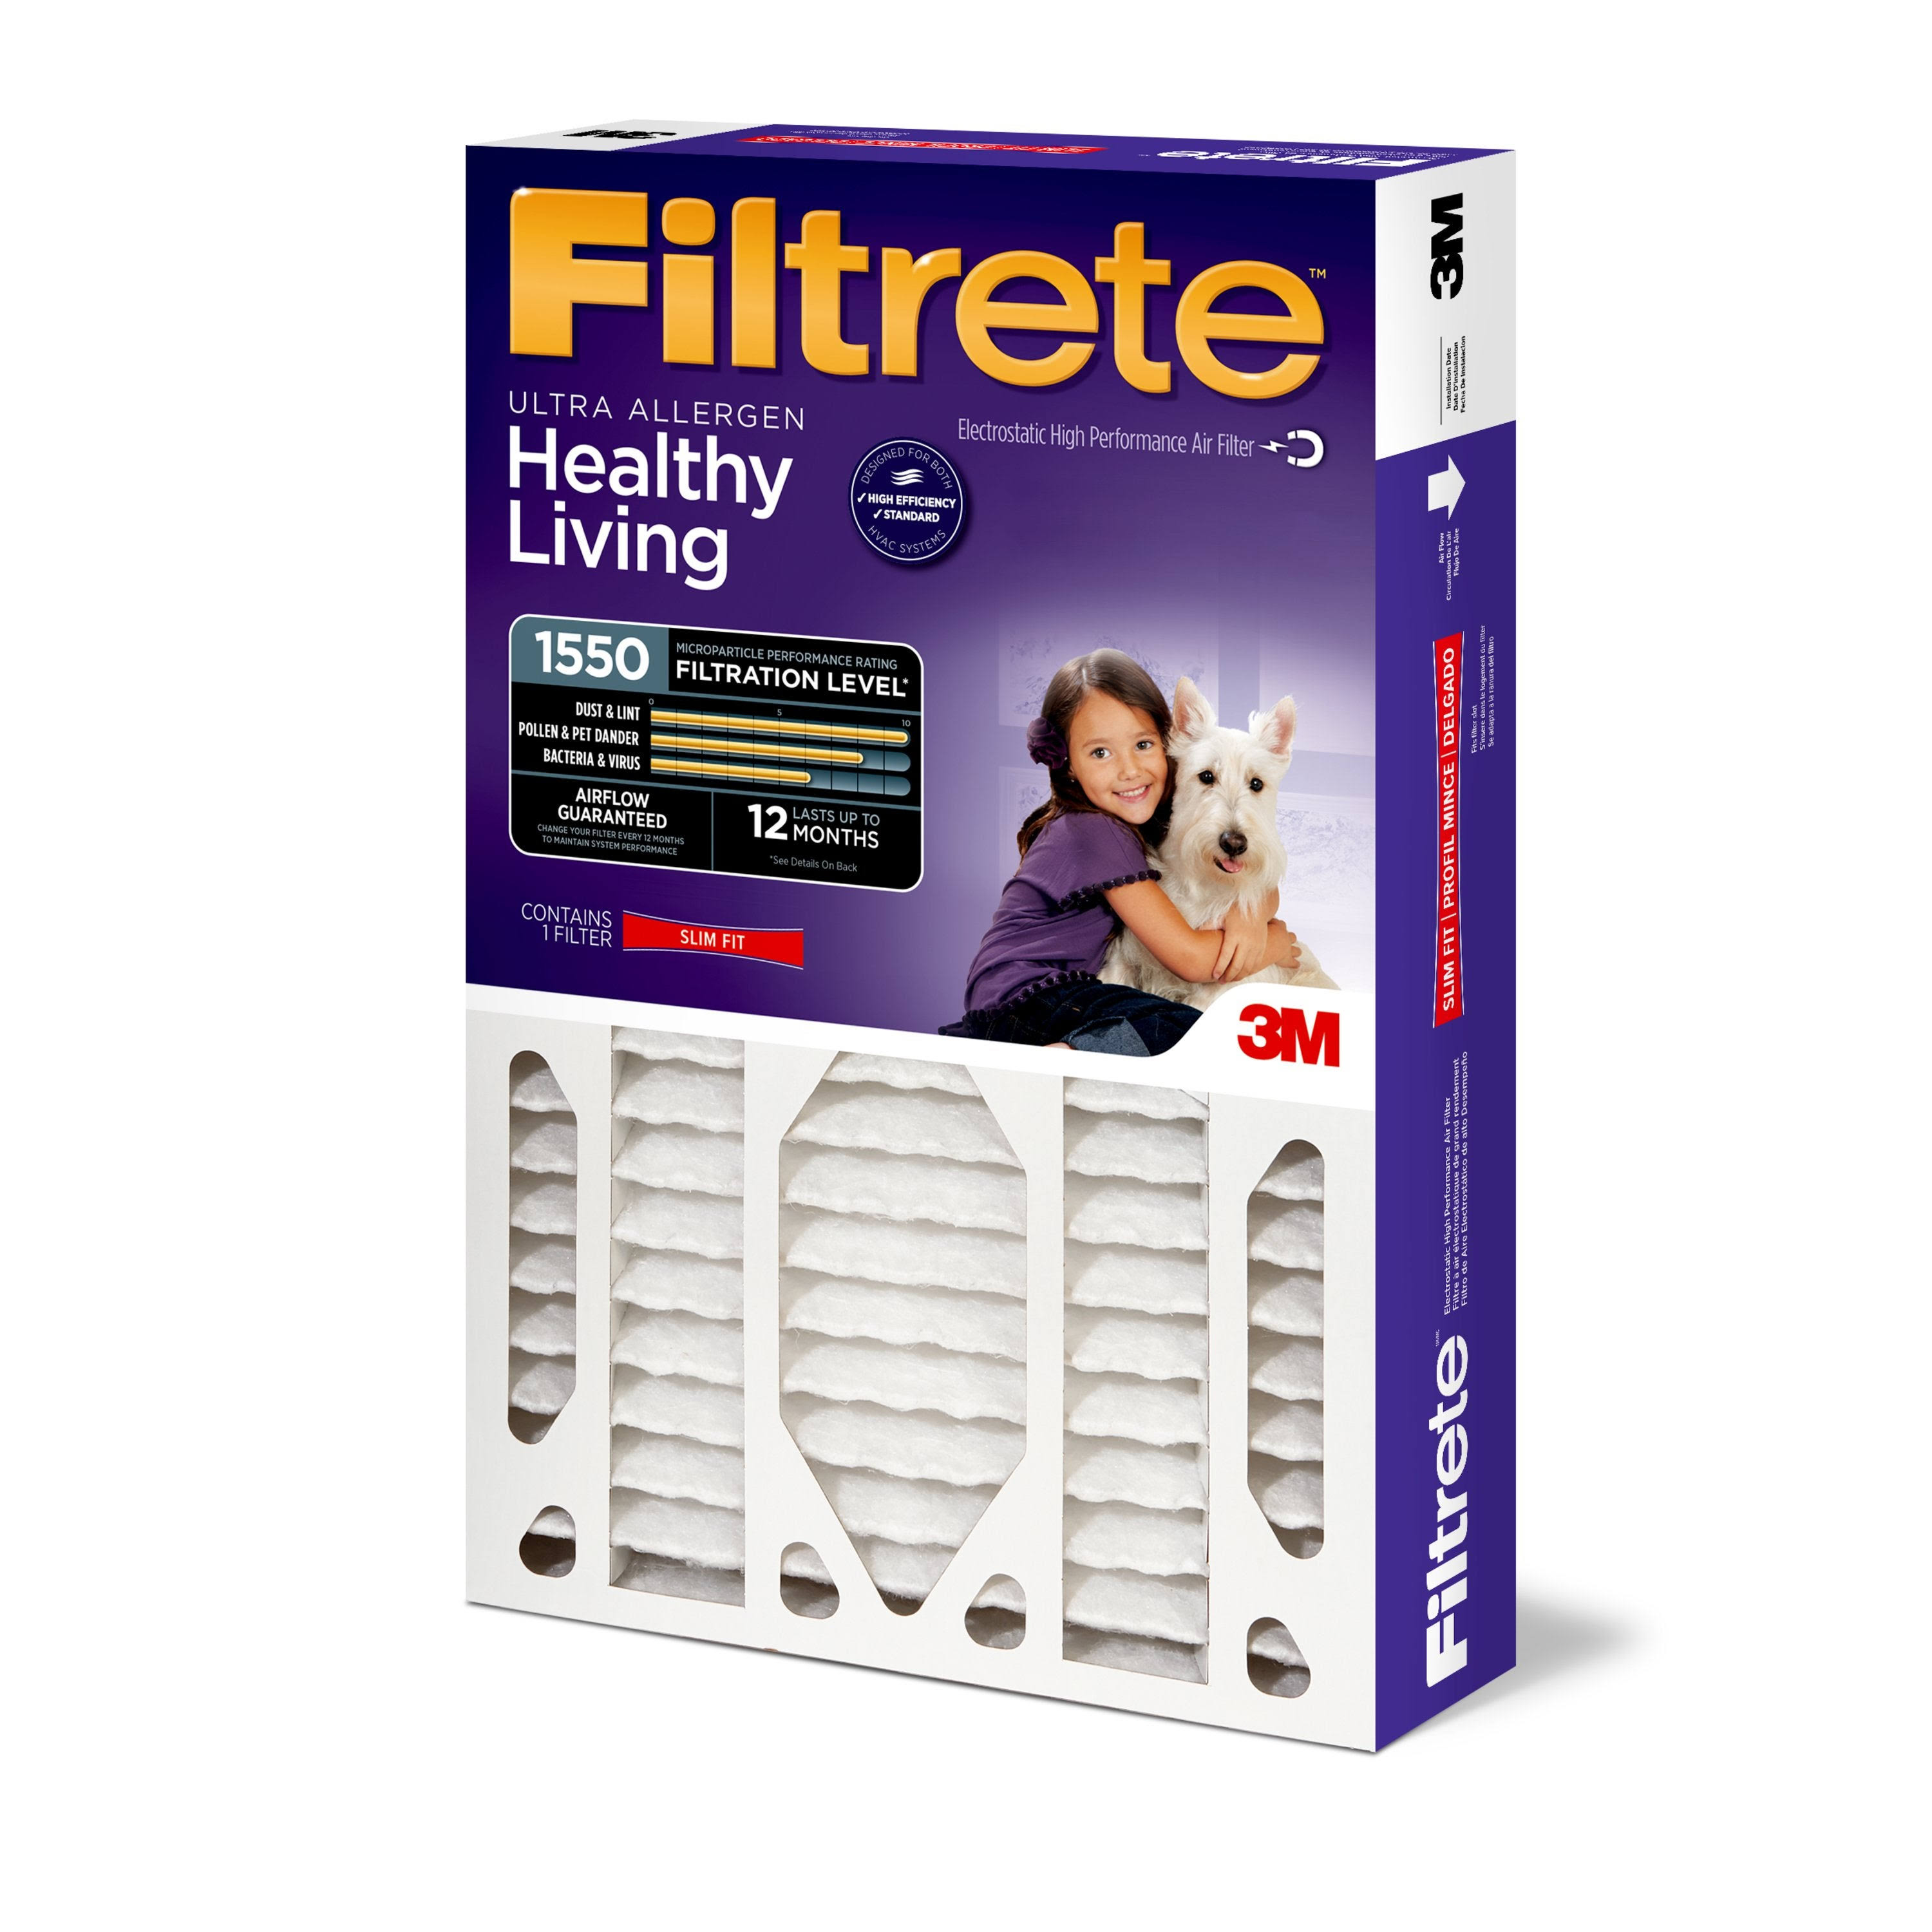 Filtrete Allergen Reduction Filters - 20" X 25" X 4"